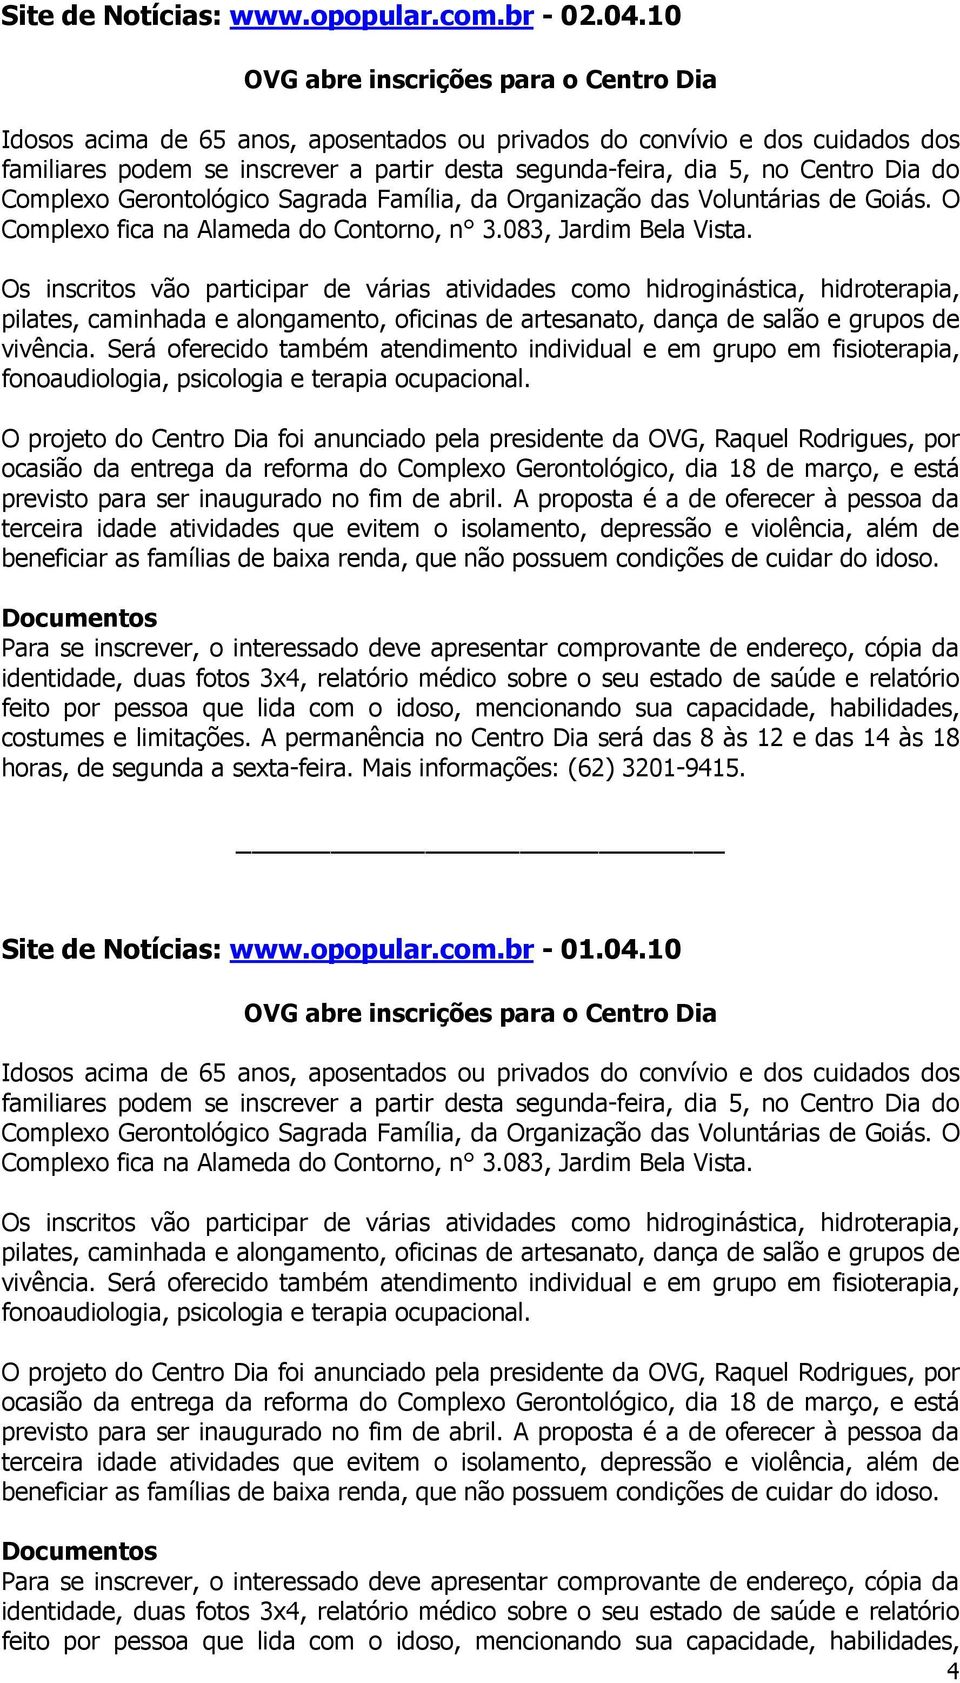 Dia do Complexo Gerontológico Sagrada Família, da Organização das Voluntárias de Goiás. O Complexo fica na Alameda do Contorno, n 3.083, Jardim Bela Vista.